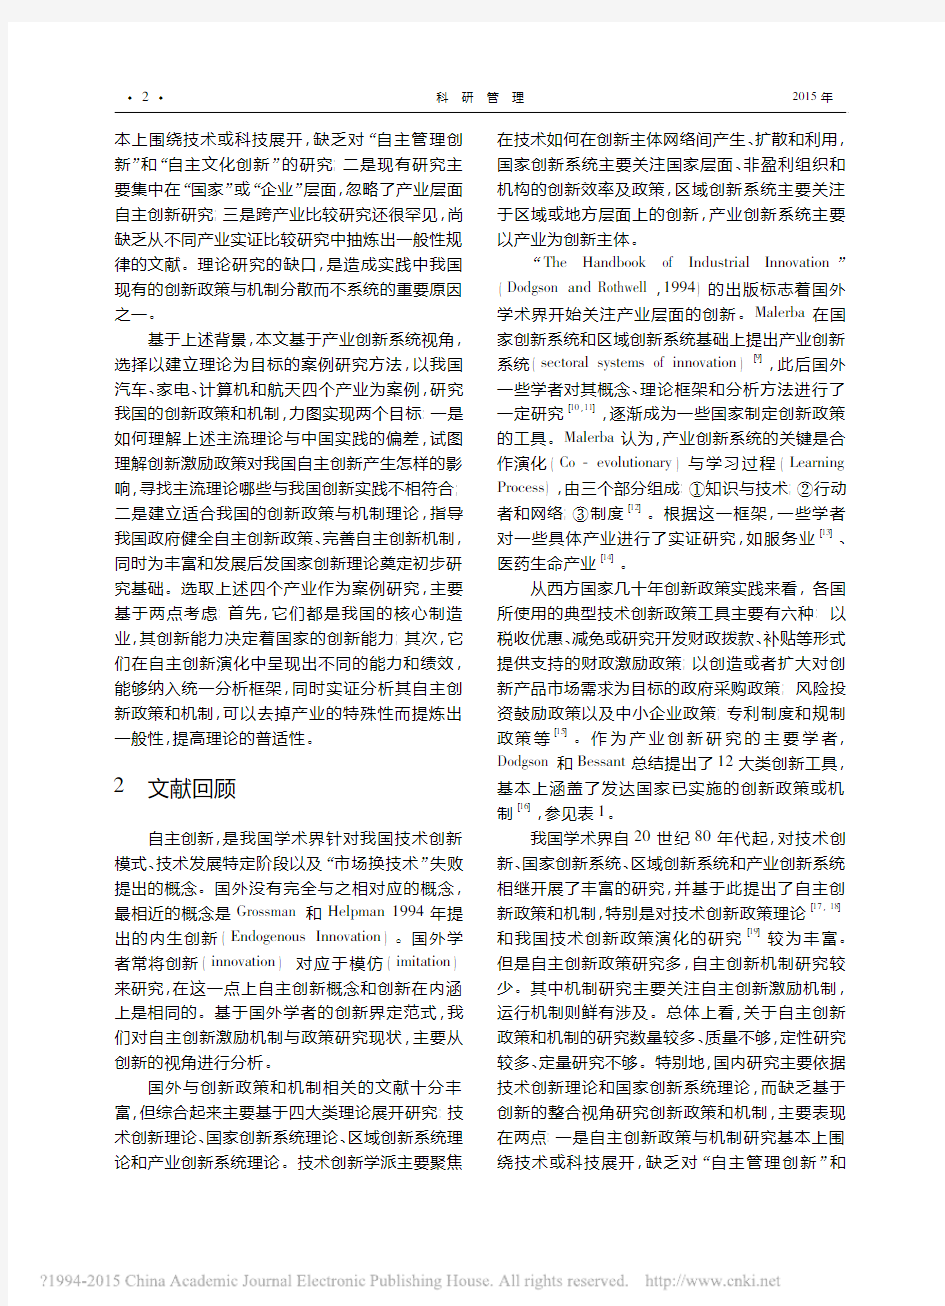 自主创新政策与机制_来自中国四个产业的实证